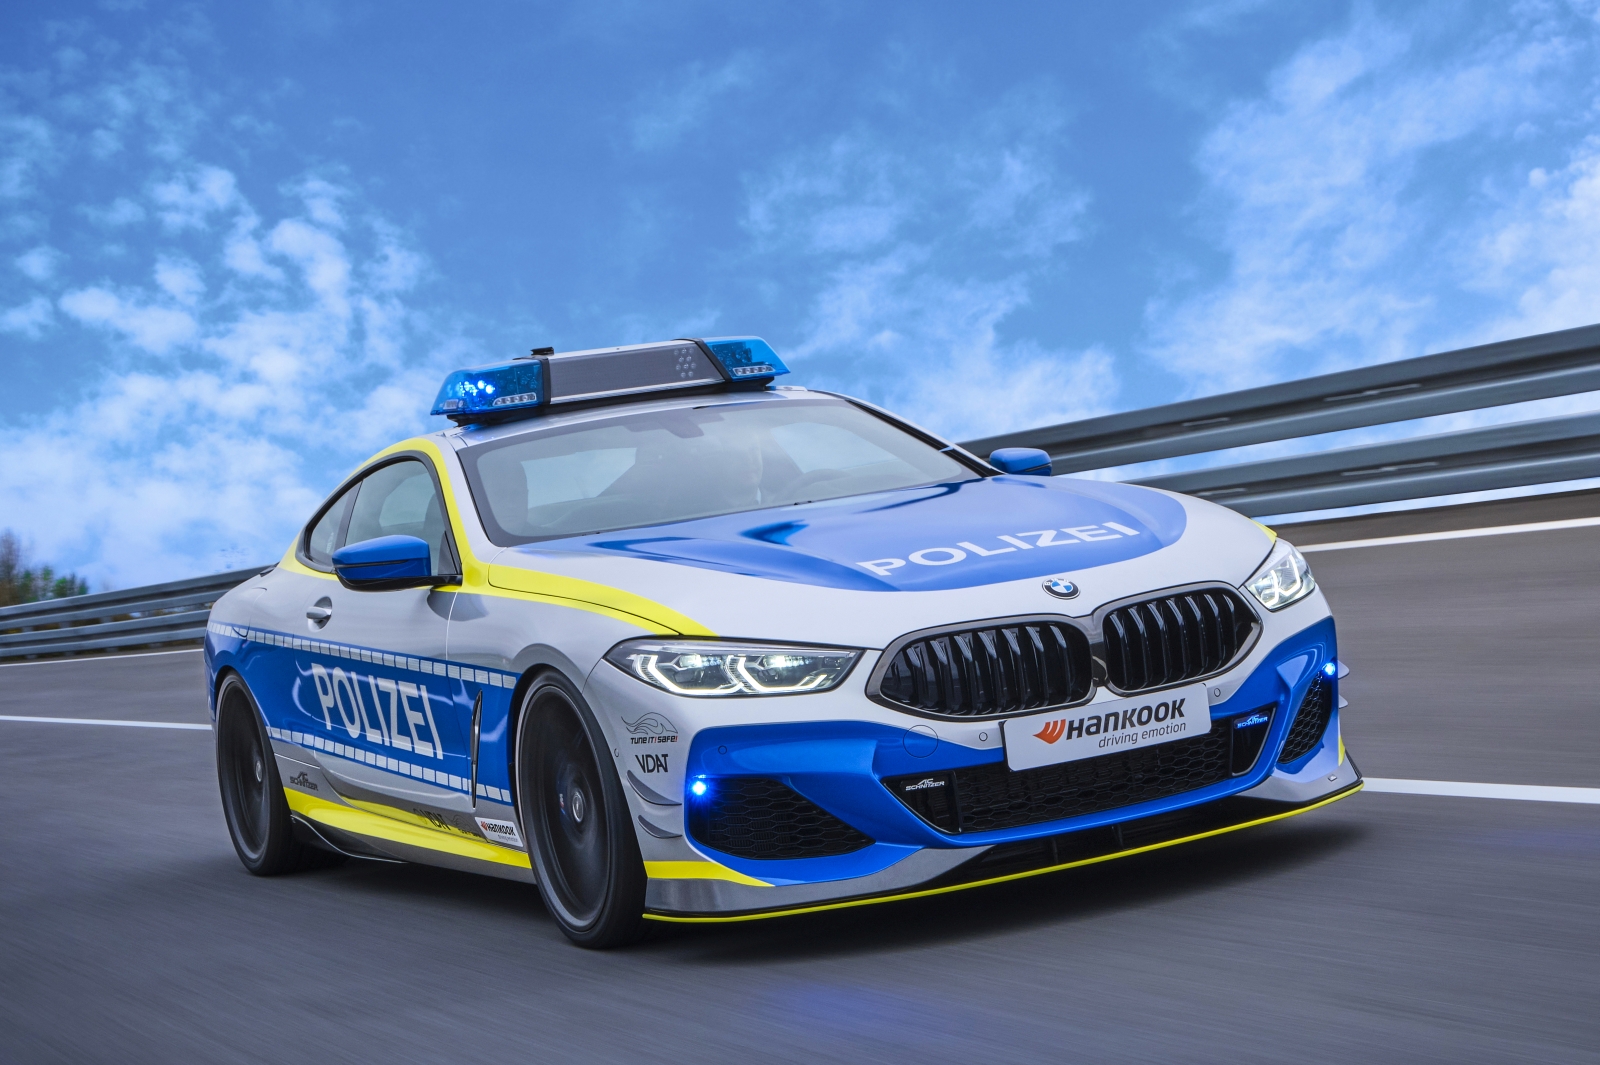 Tune it! Safe! Police BMW M850i xDrive by AC Schnitzer